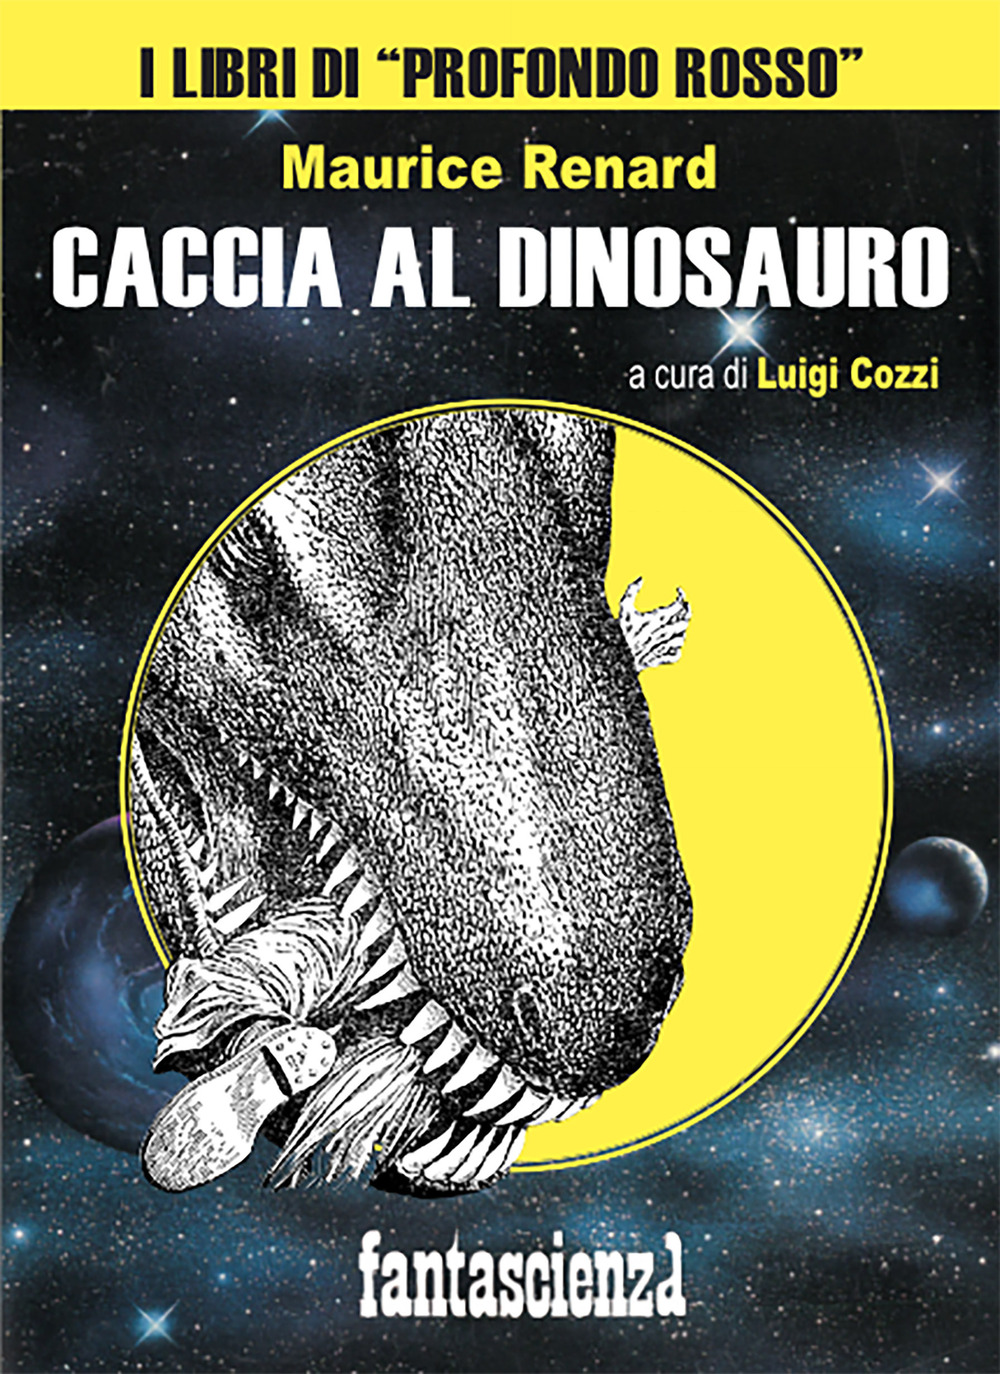 Libri Maurice Renard - Caccia Al Dinosauro NUOVO SIGILLATO, EDIZIONE DEL 20/09/2021 SUBITO DISPONIBILE